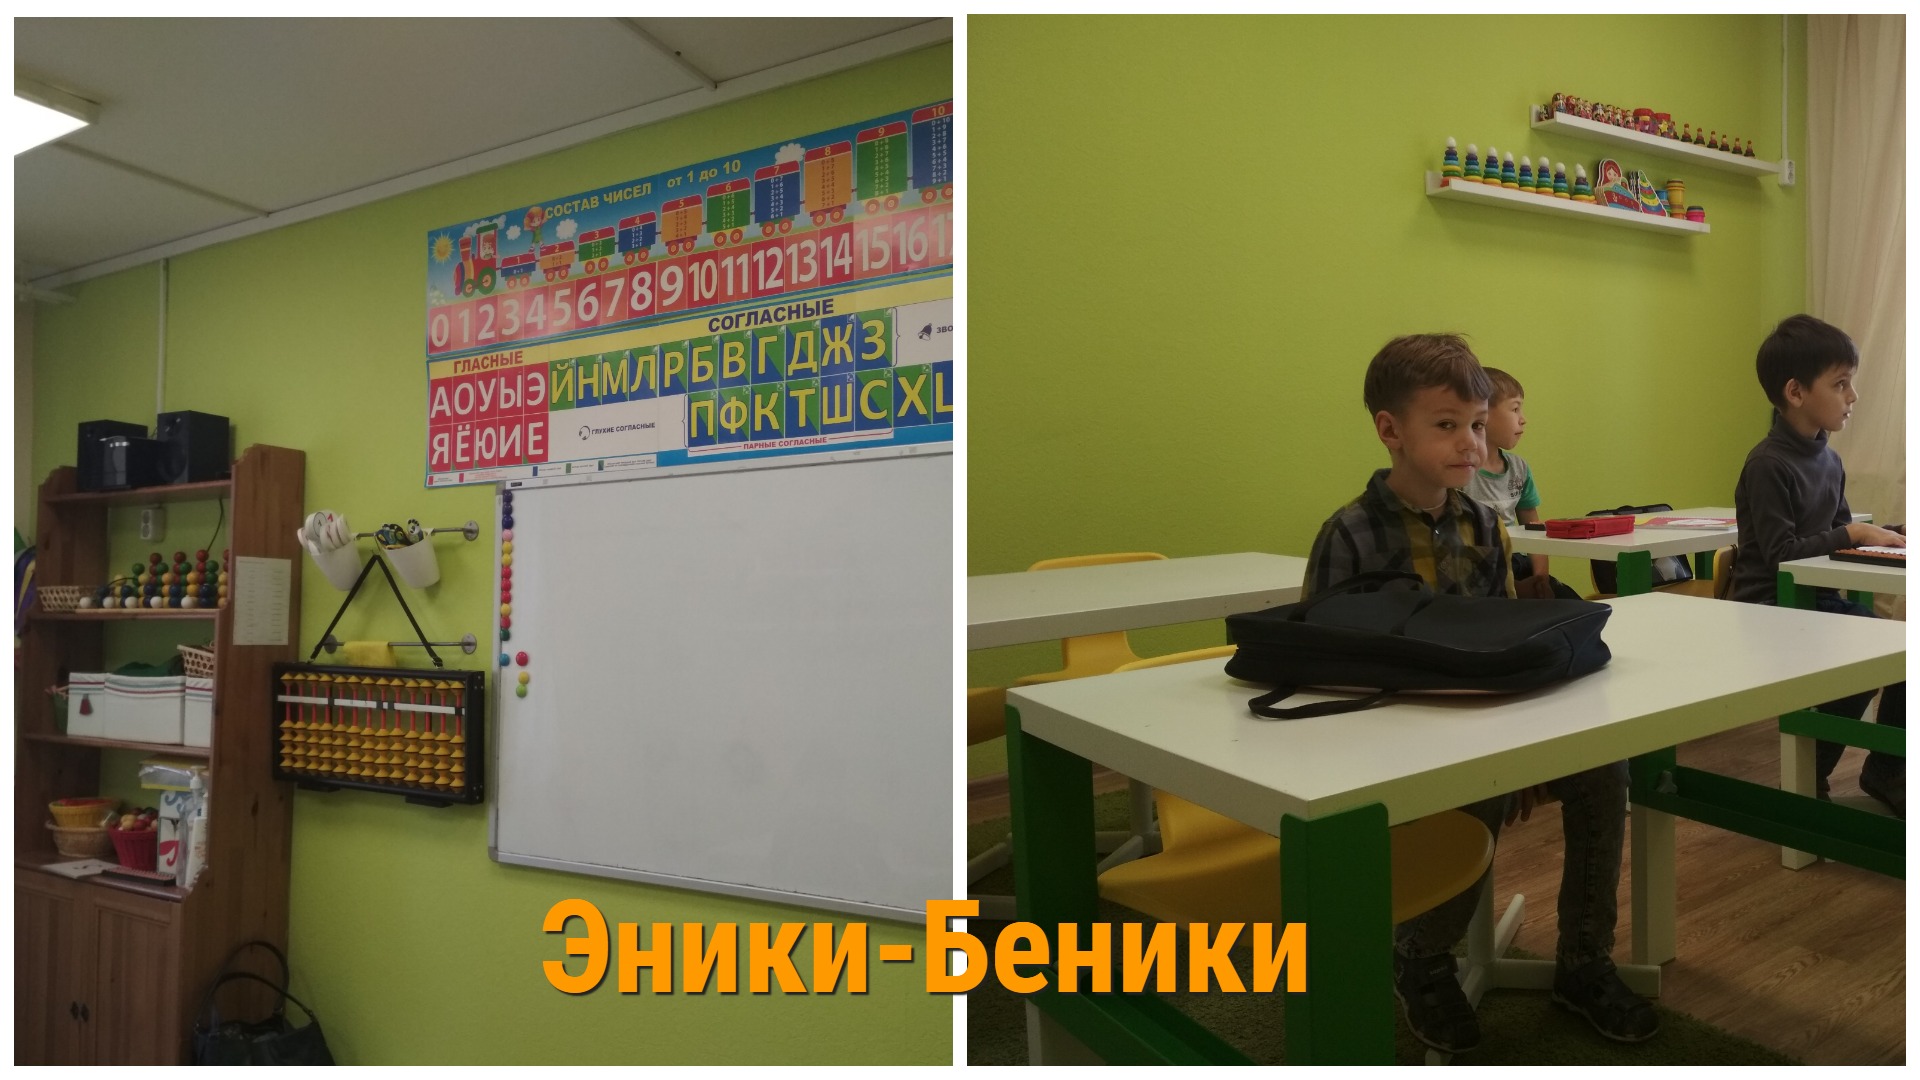 Детский центр "Эники-Беники", Иваново, в Московском микрорайоне.